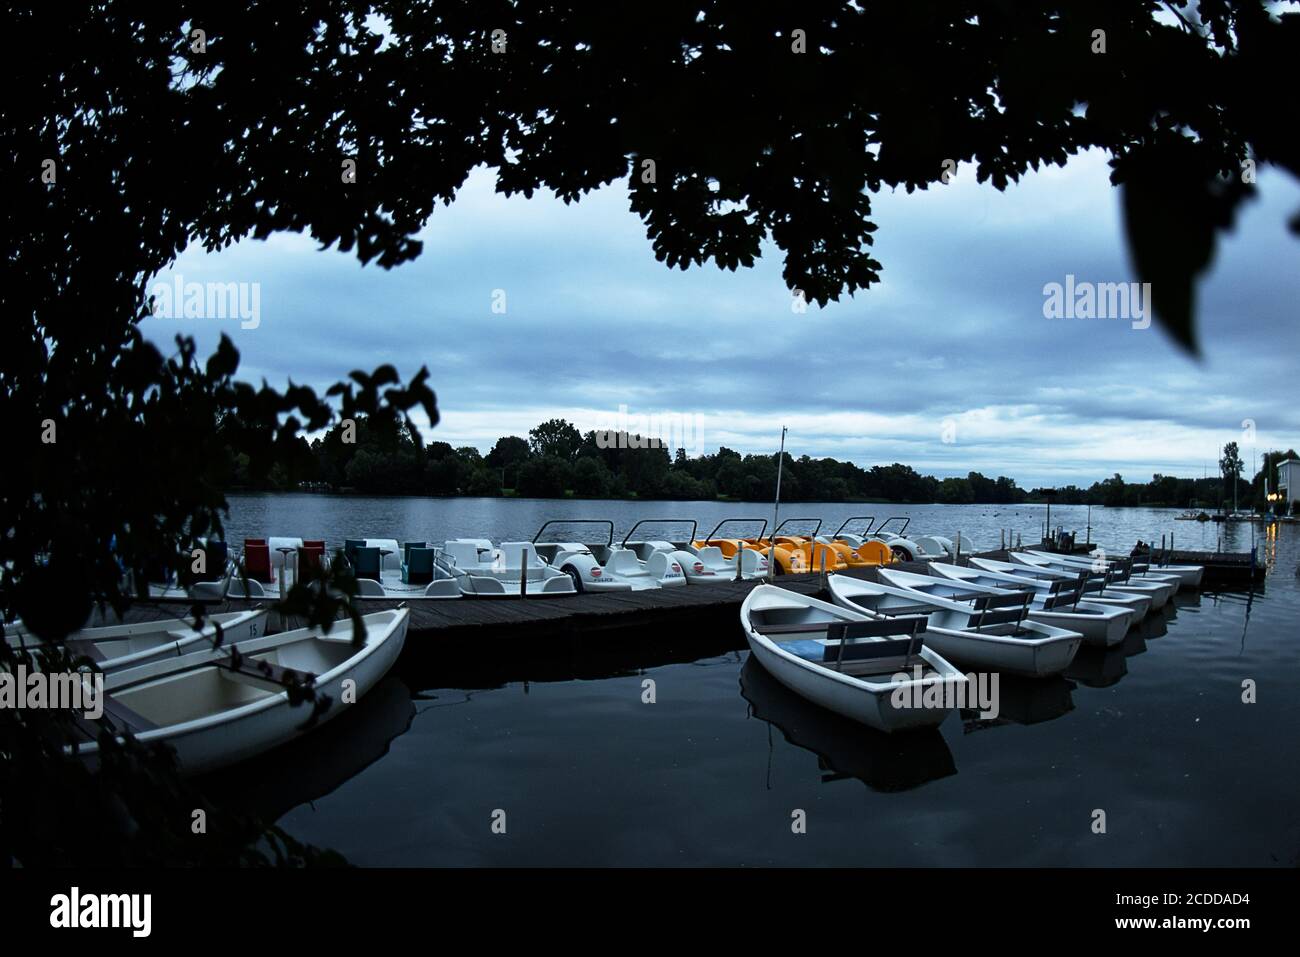 28 agosto 2020, bassa Sassonia, Göttingen: Nuvole scure passano sopra barche a remi e pedalò la mattina presto, che si trovano su un molo nel lago di ghiaia di Göttingen. Foto: Swen Pförtner/dpa Foto Stock